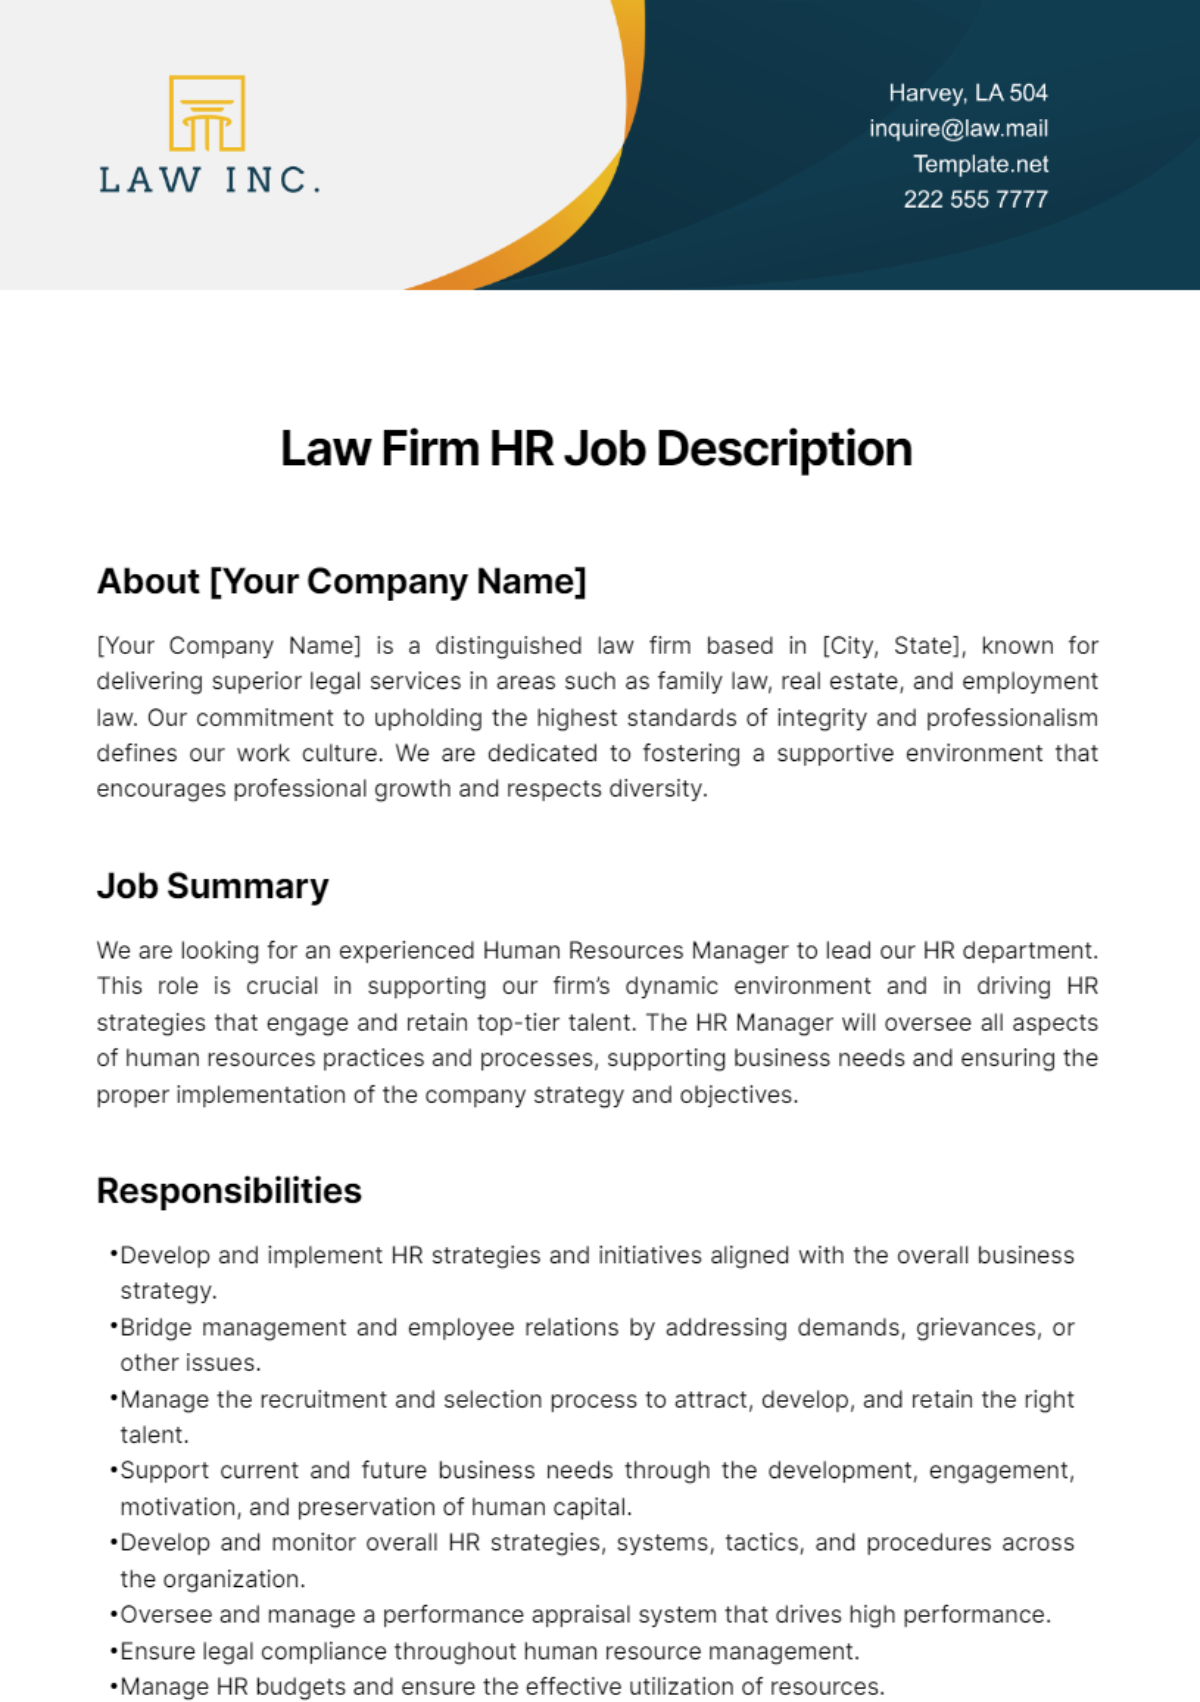 Free Law Firm HR Job Description Template